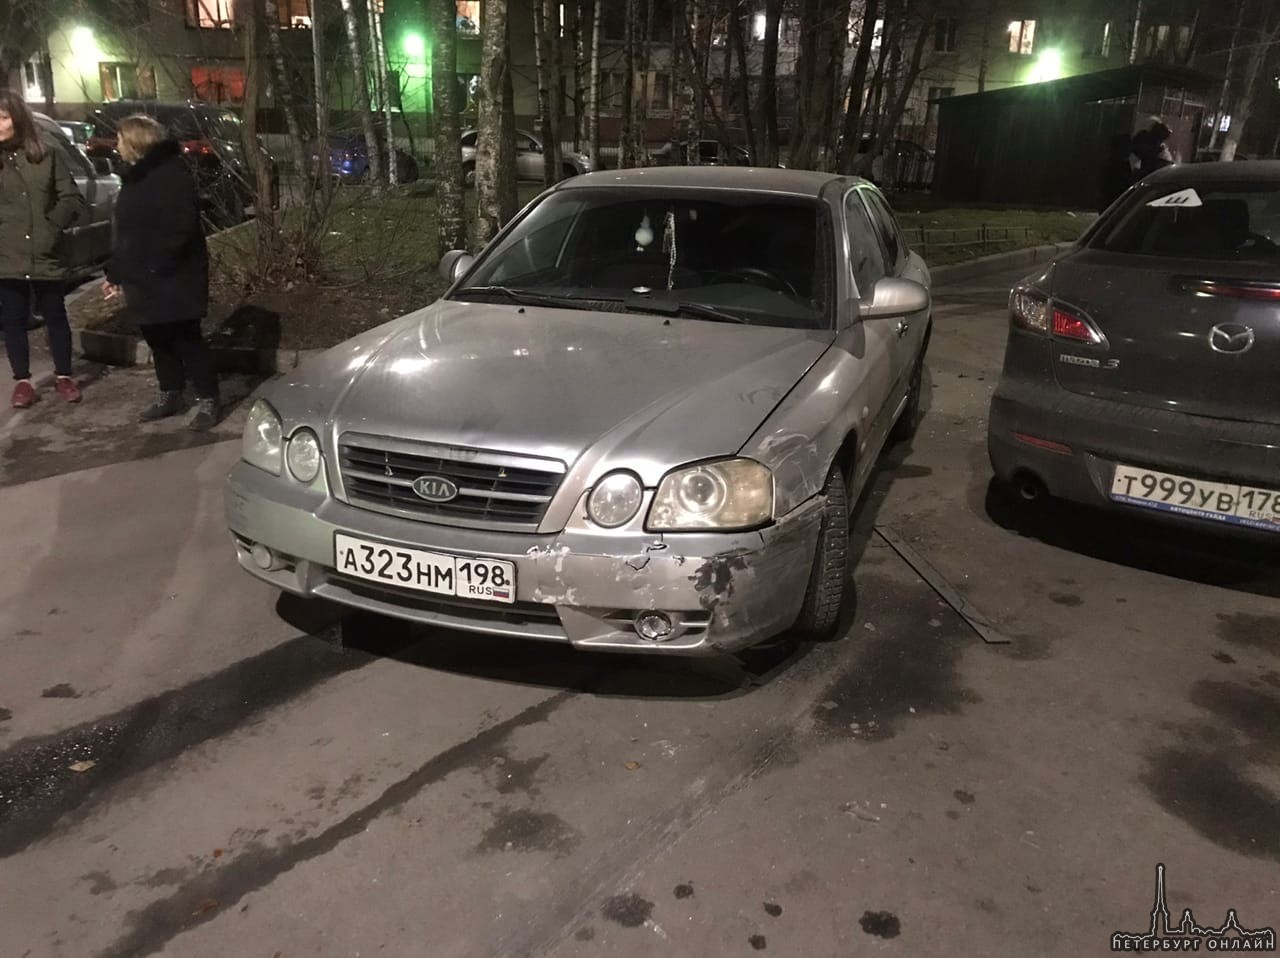 В 20:30 во дворе Будапештской 114 женщина на КИА предположительно в СО наехала колесом на мазду и в...